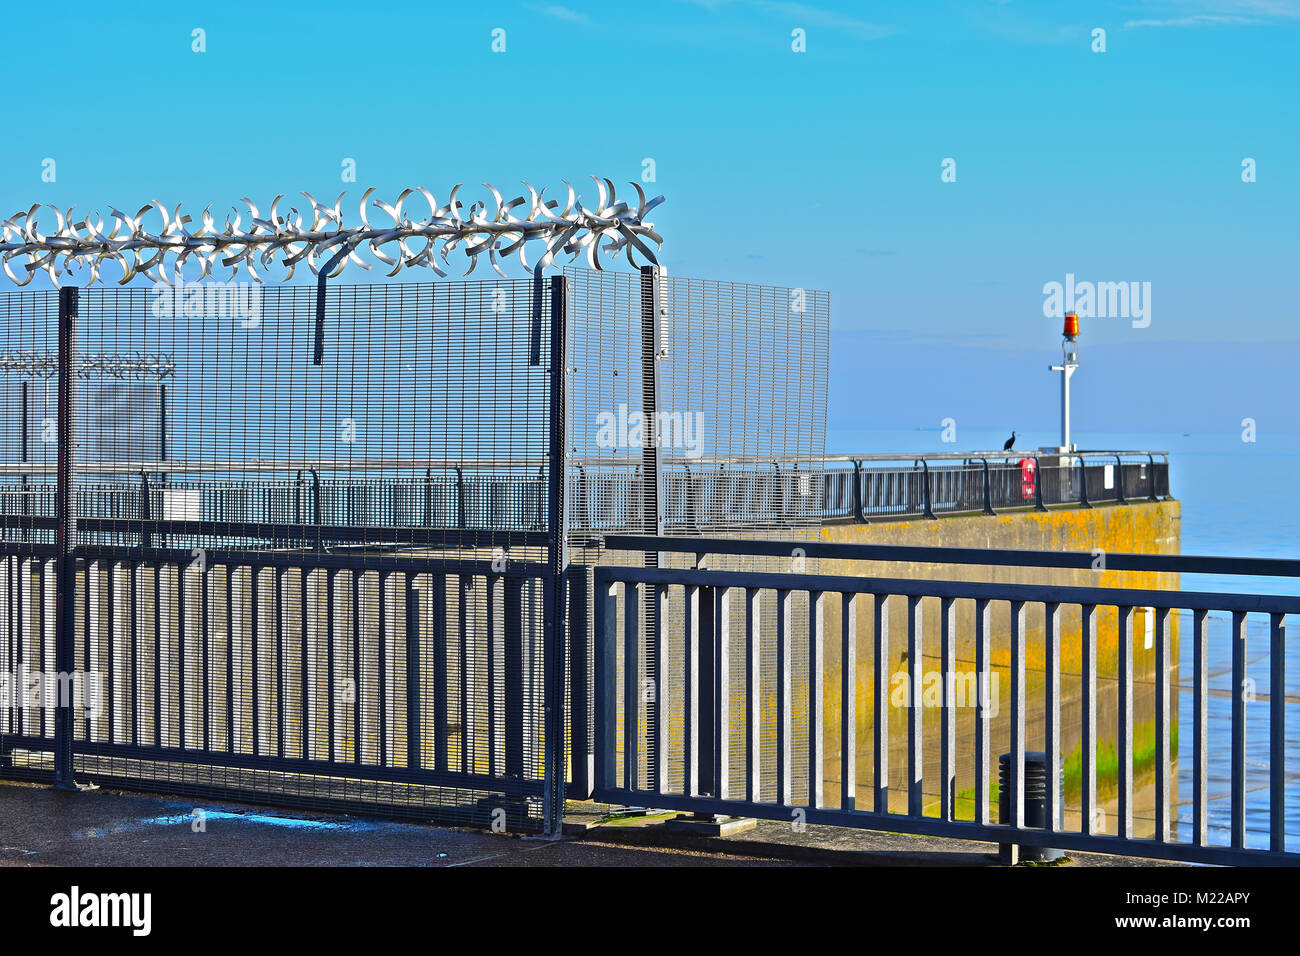 Des barrières de sécurité de haute qualité et de compensation horizontale autour de la sortie d'eau du barrage qui entoure la baie de Cardiff, Pays de Galles S.. Banque D'Images